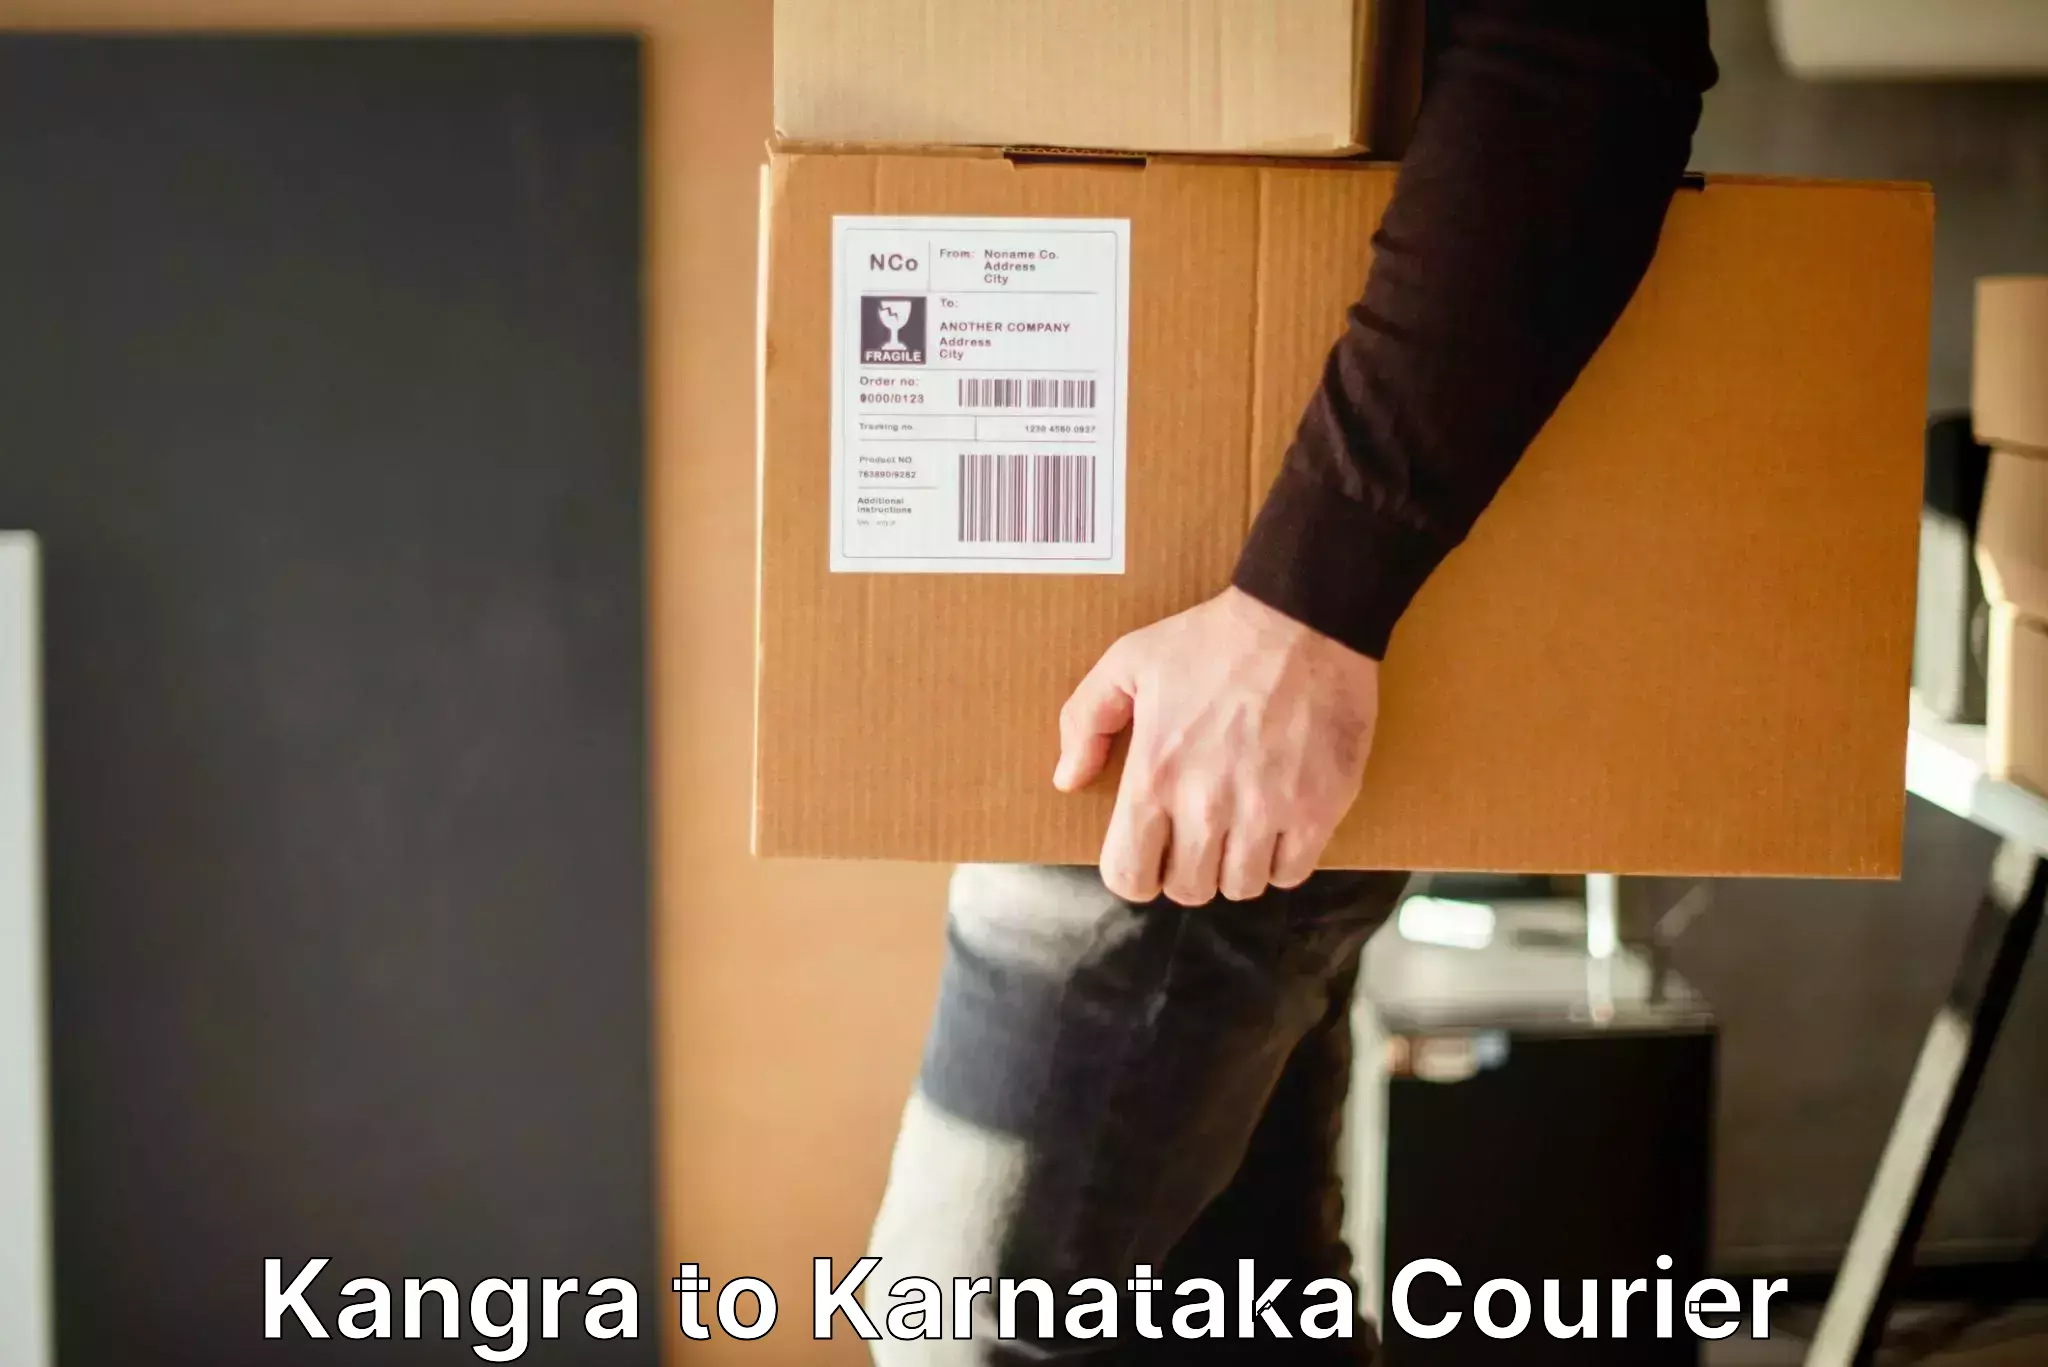 Luggage transport consultancy Kangra to Karnataka